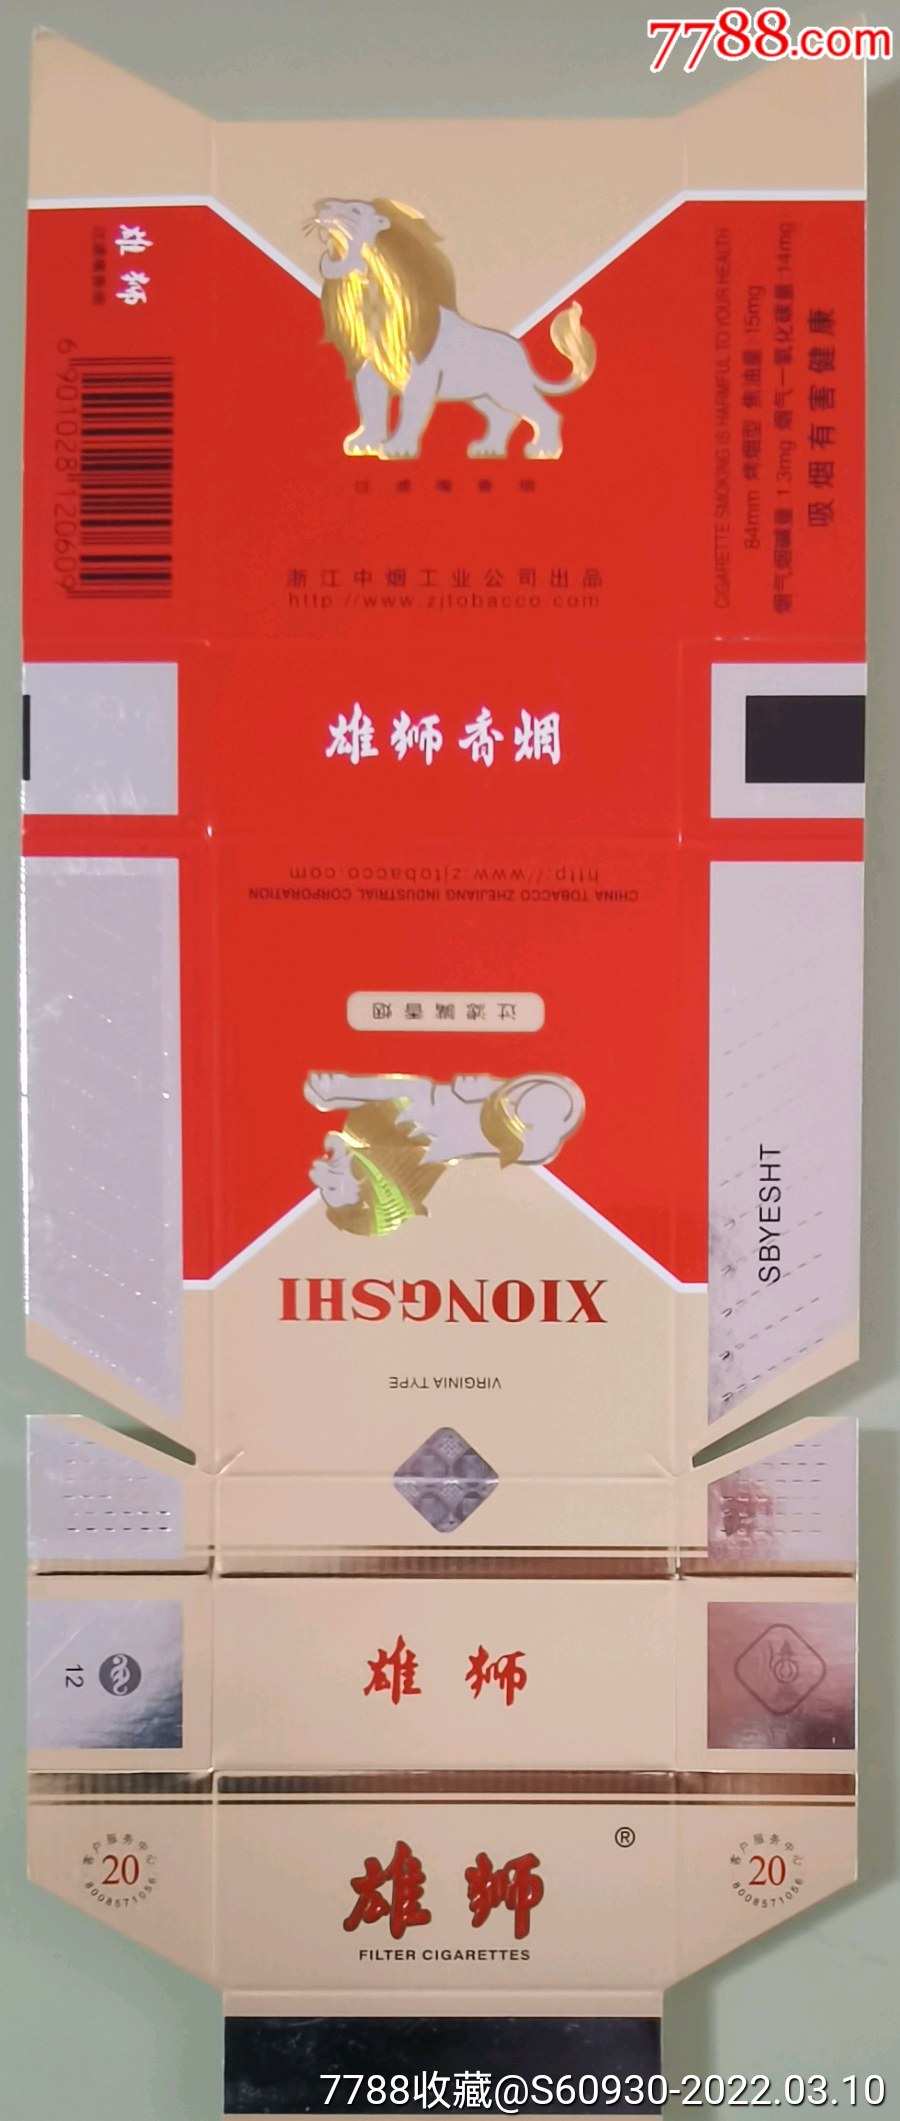 雄狮浙江中烟工业公司